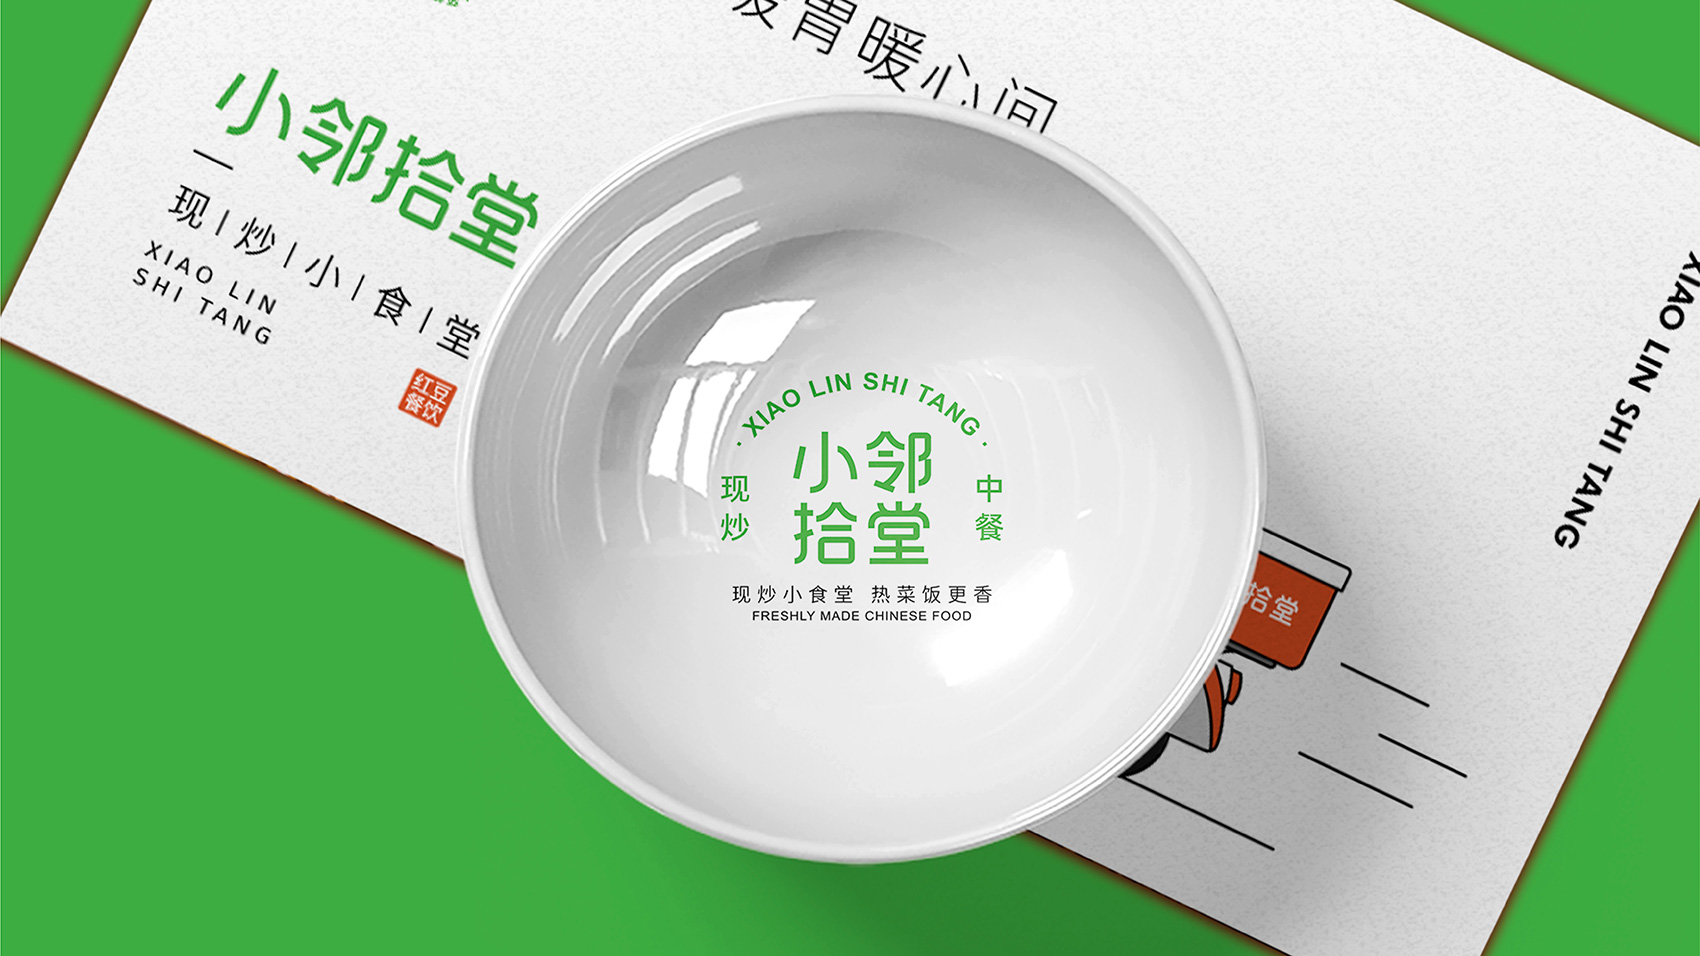 南京餐饮VI设计 南京LOGO设计 餐饮包装设计 南京VI设计